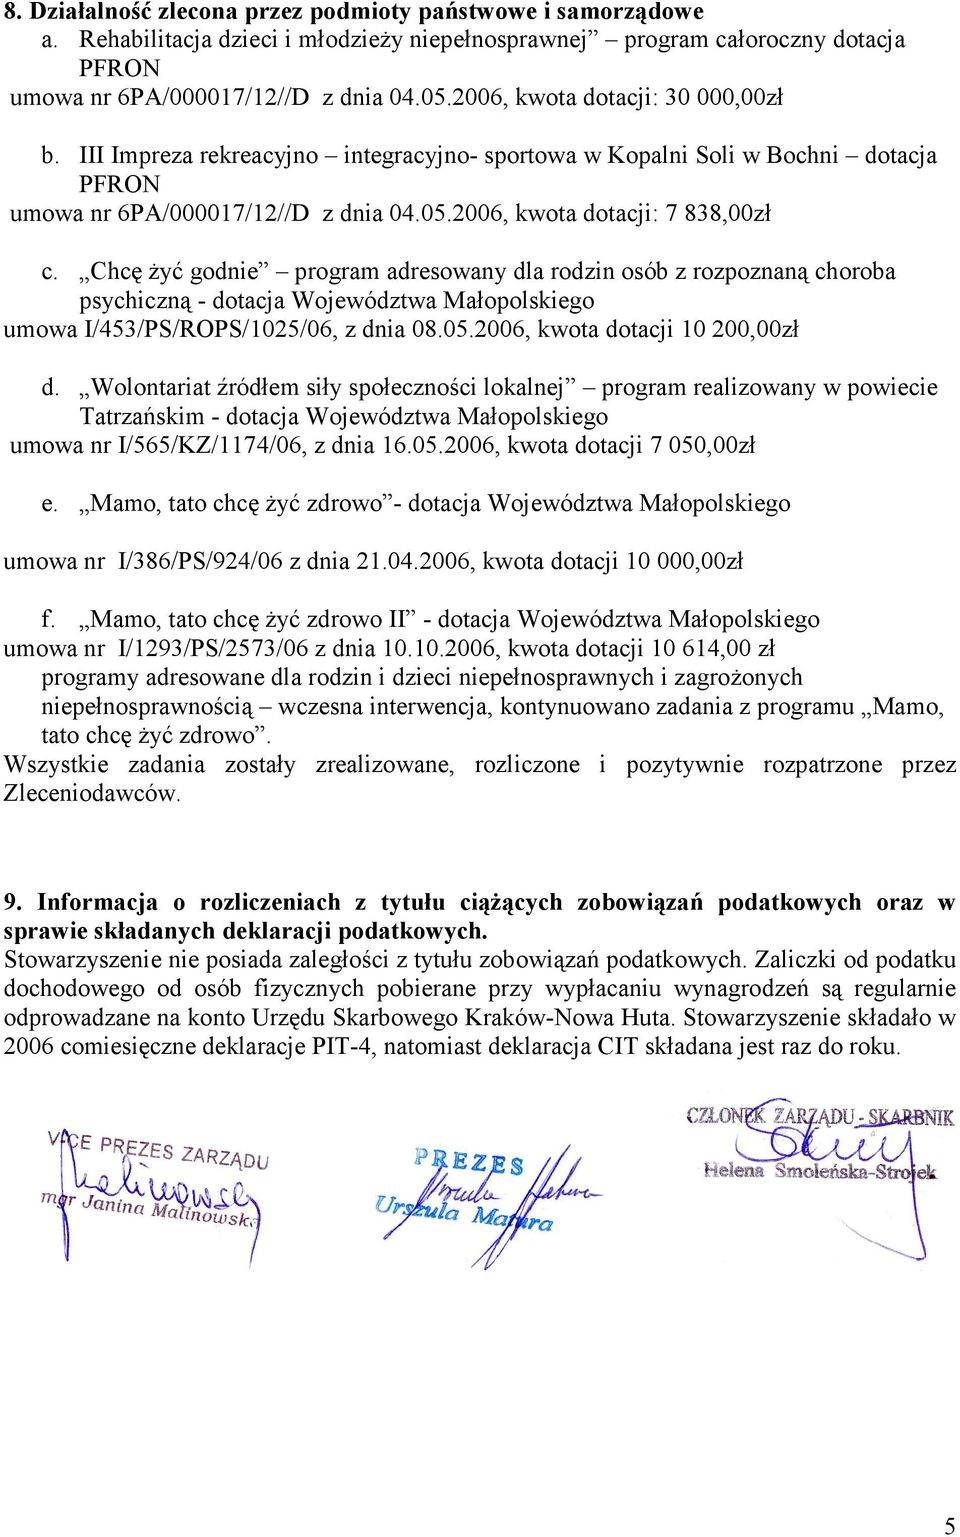 Chcę żyć godnie program adresowany dla rodzin osób z rozpoznaną choroba psychiczną - dotacja Województwa Małopolskiego umowa I/453/PS/ROPS/1025/06, z dnia 08.05.2006, kwota dotacji 10 200,00zł d.